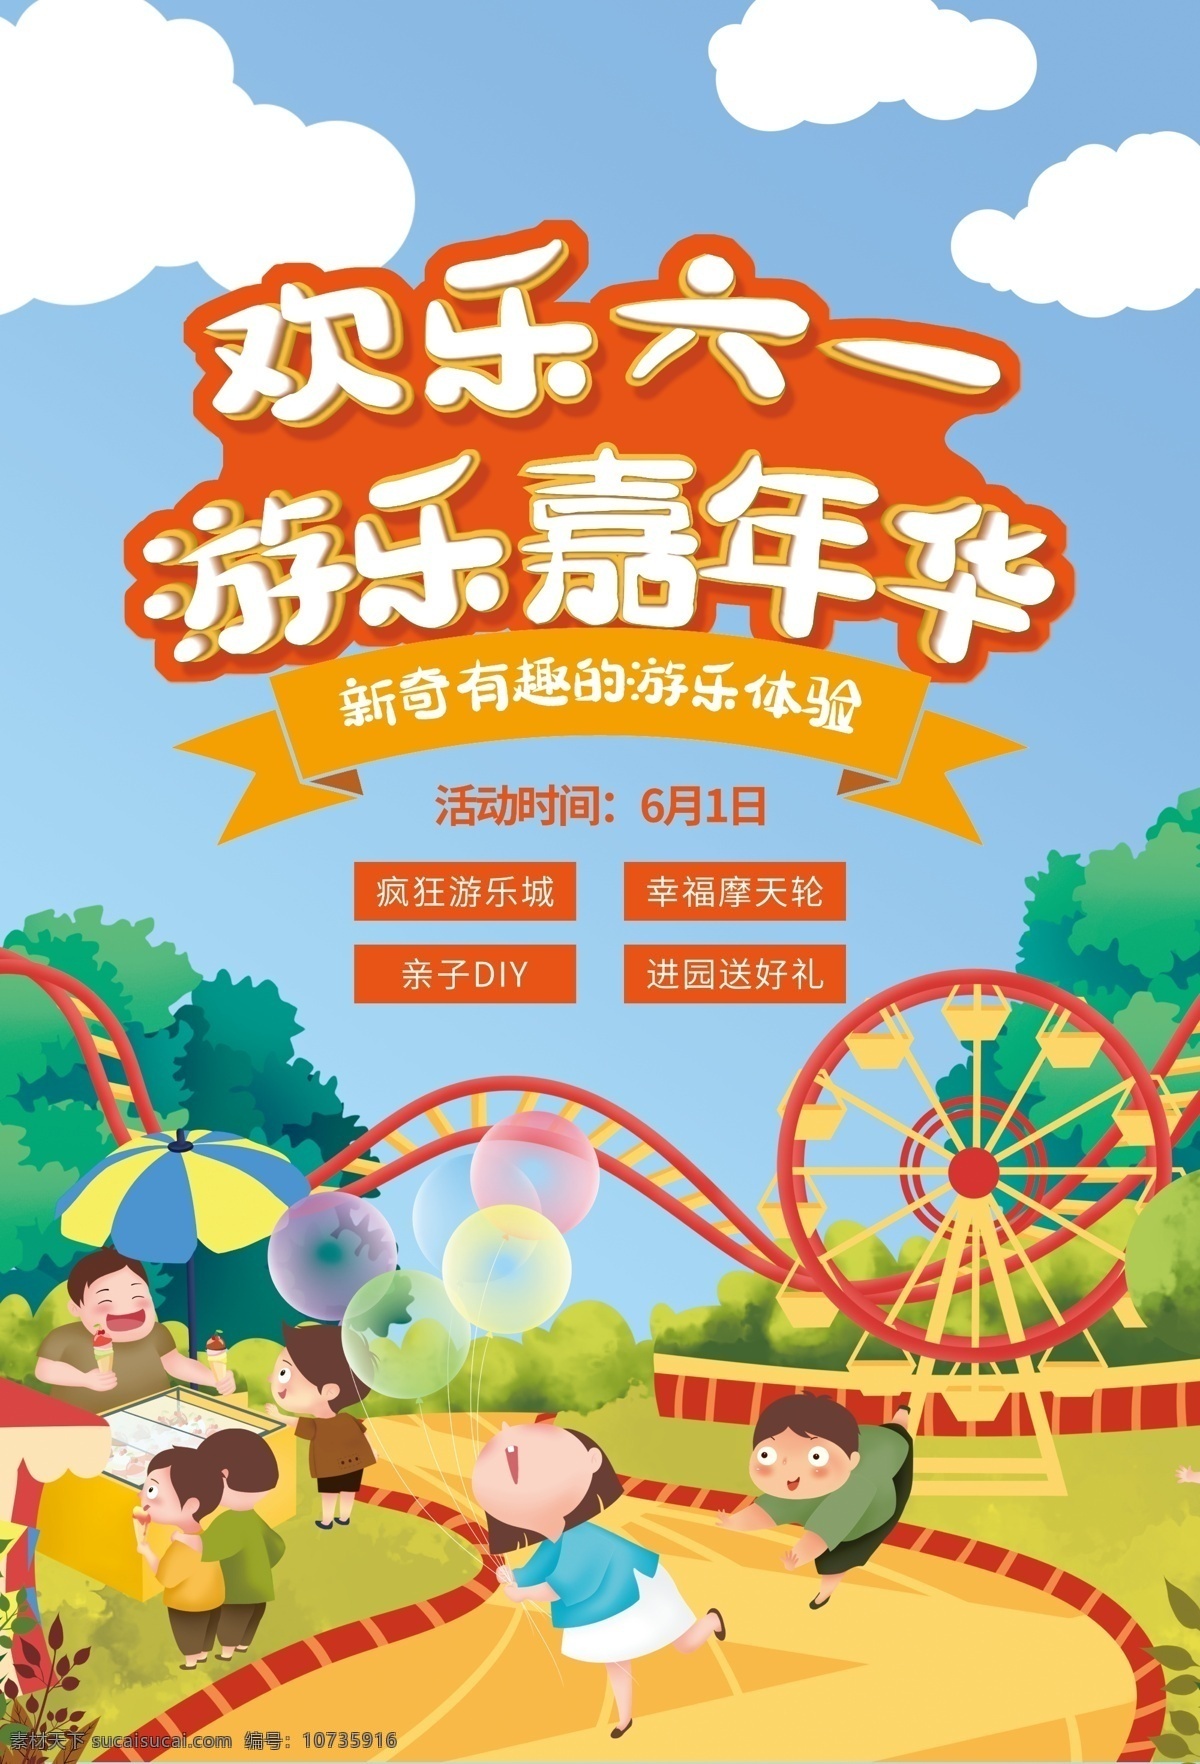 六一儿童节 游乐场 嘉年华 活动 宣传 传统节日海报